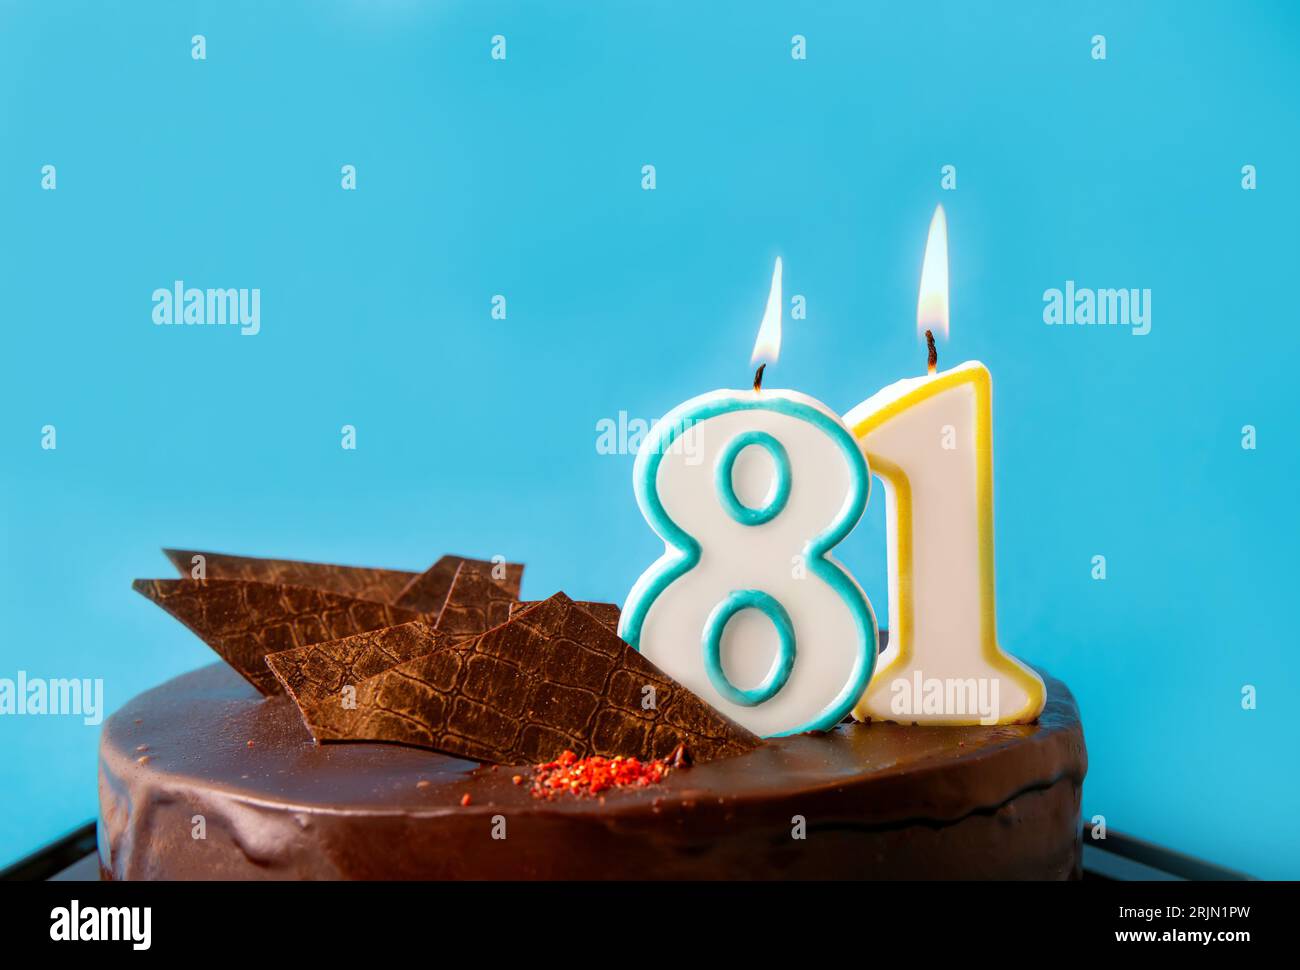 Nummer 81 Geburtstagskerze brennt auf Kuchen. Das 80er-Geburtstagsfest oder Jubiläumskonzept. Viel Platz für Kopien auf blauem Hintergrund. Stockfoto